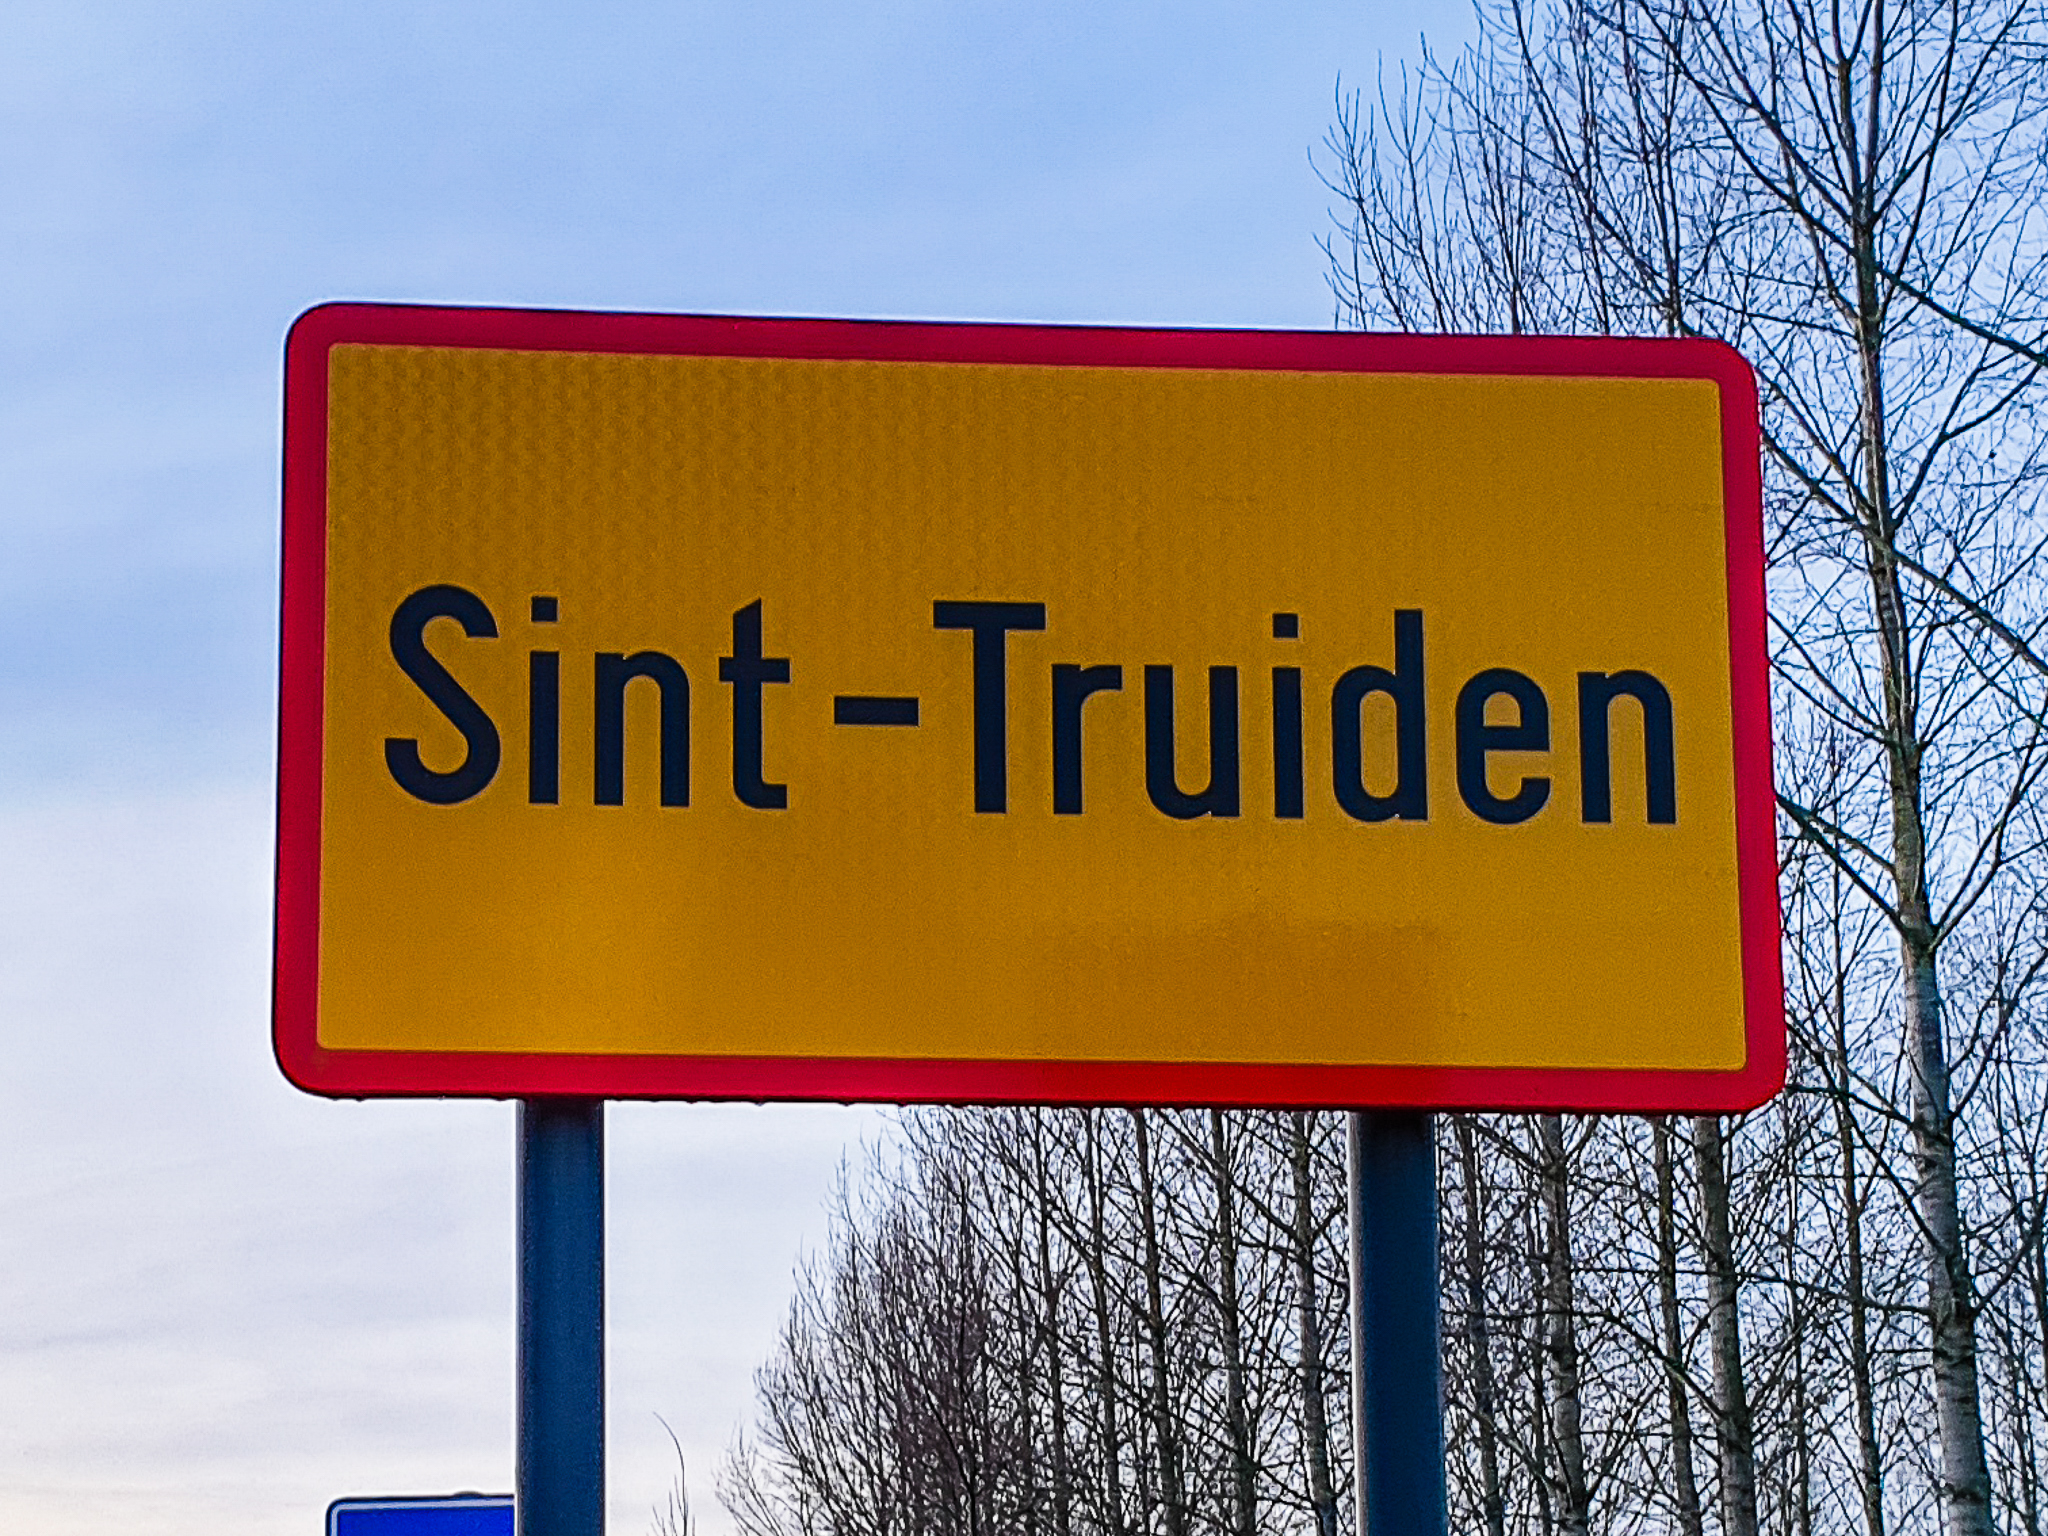 Trupark vereenvoudigt parkeerervaring in Sint-Truiden